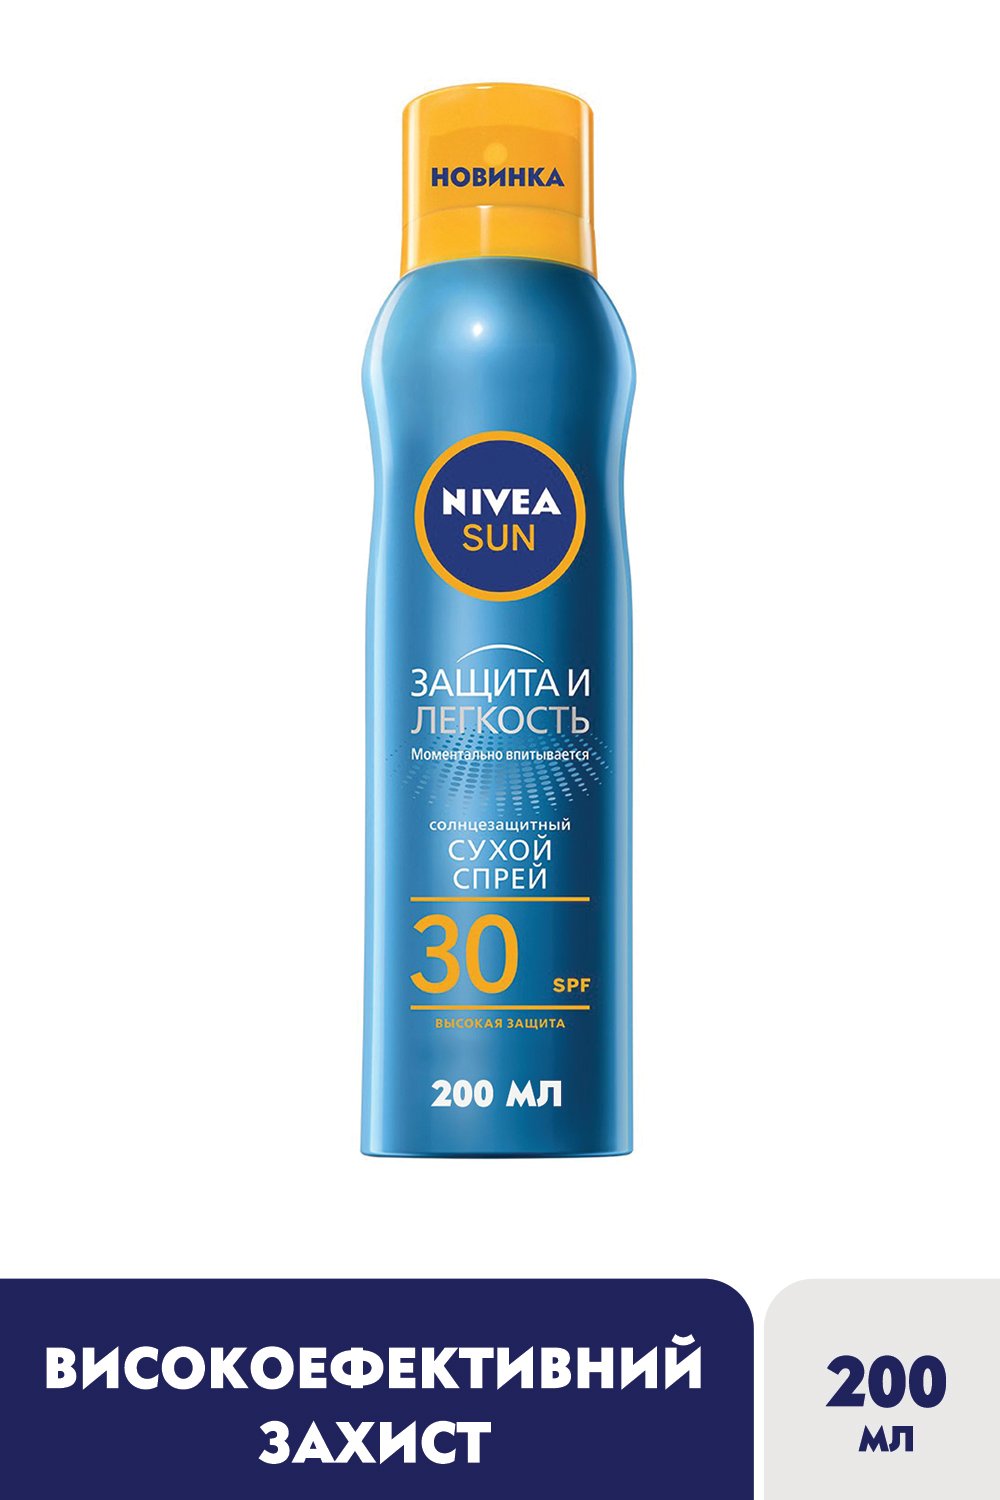 Солнцезащитный сухой спрей Nivea Sun Защита и легкость, SPF 30, 200 мл - фото 4